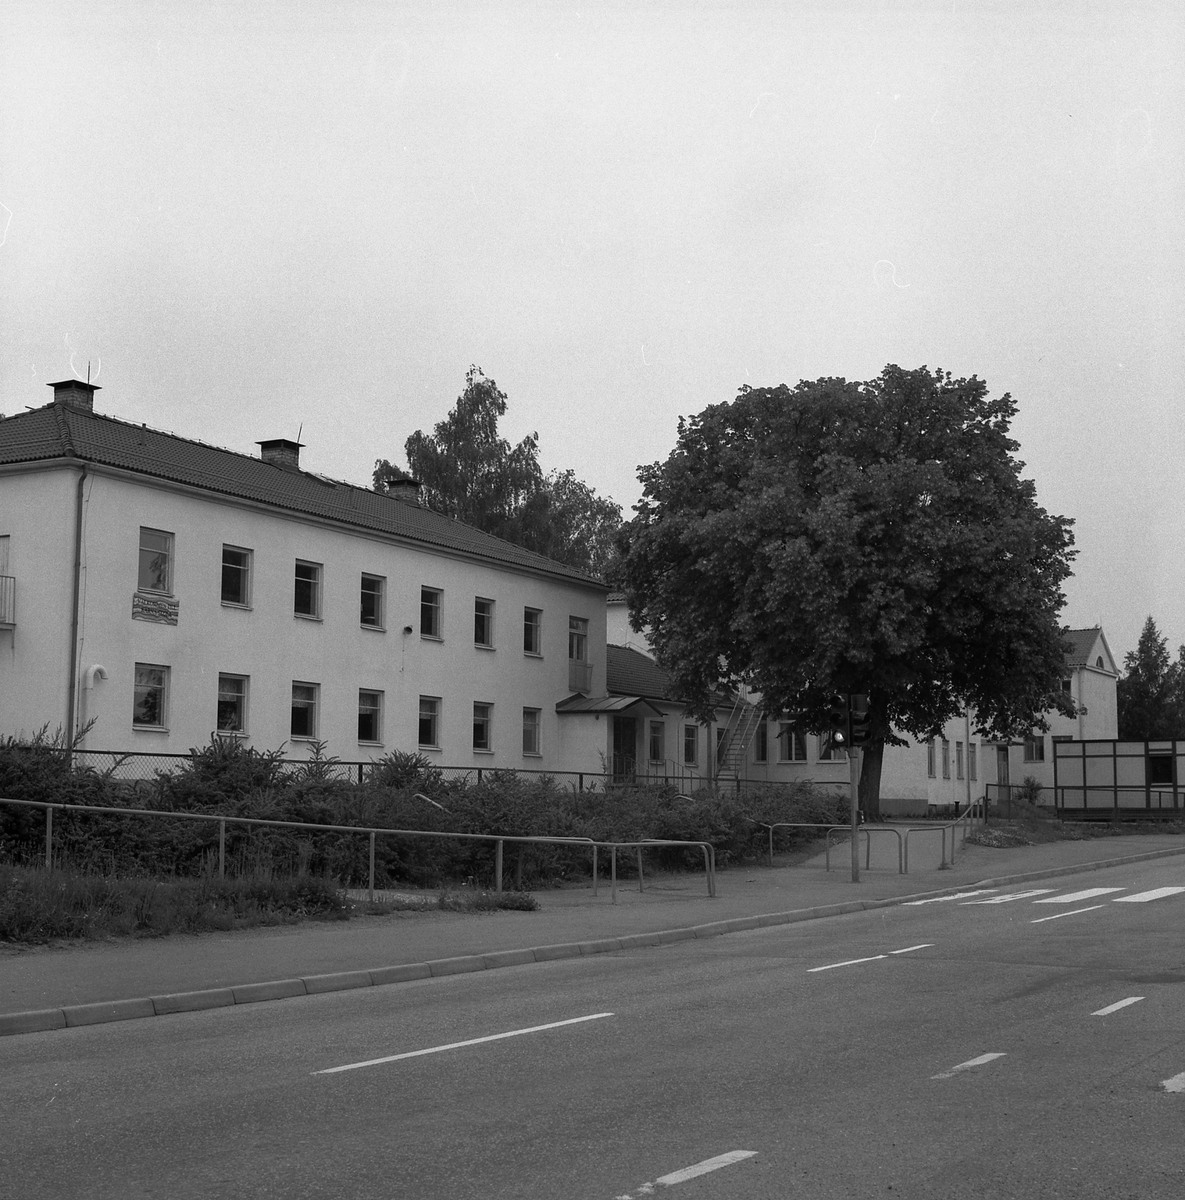 Orig. text: Kärna skola. Kärna skola som nu är riven. Byggnaden längst bort är den äldsta byggnaden.